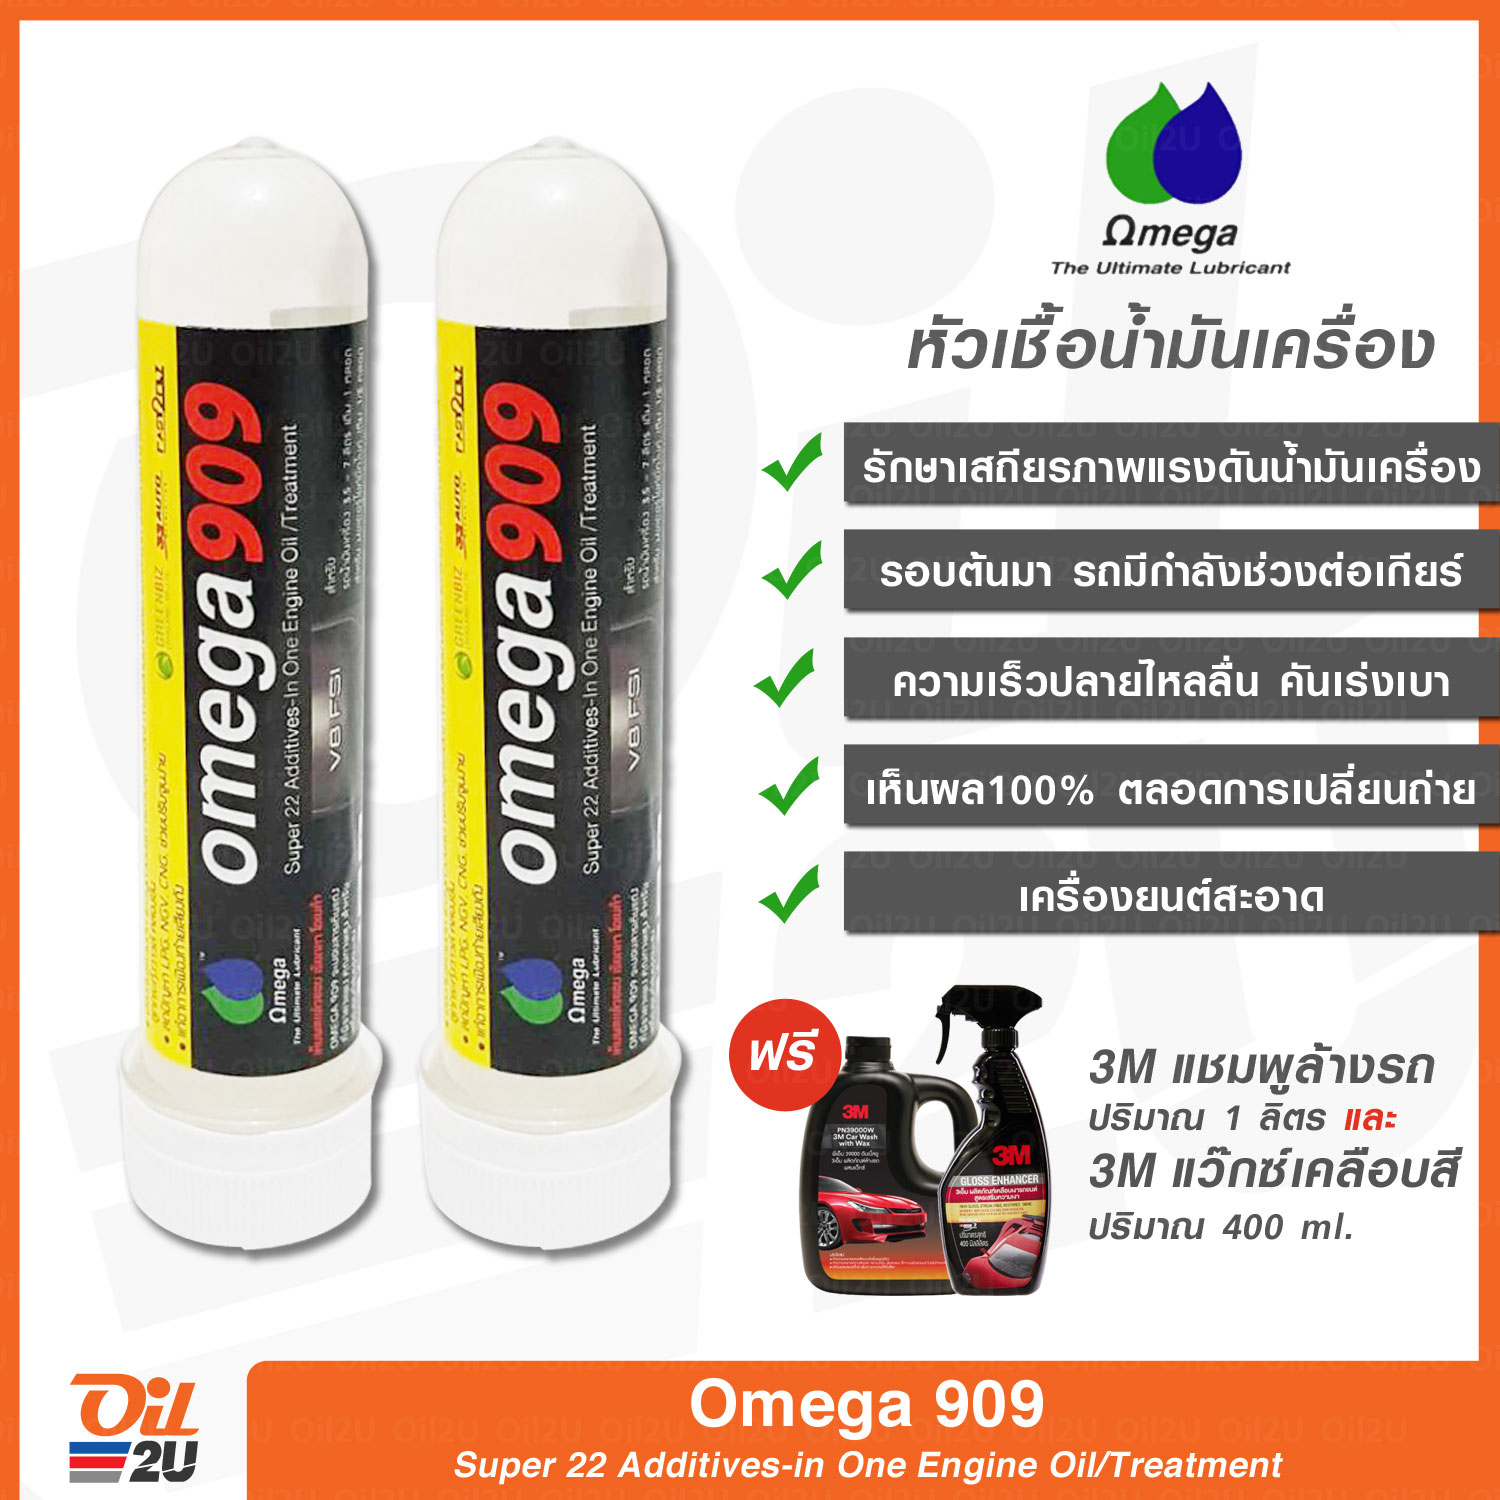 หัวเชื้อน้ำมันเครื่อง Omega 909 ปริมาณ 45 ml. ซื้อคู่ 2 หลอด รับฟรี ผลิตภัณฑ์ 3M (กดเลือกจากตัวเลือกของแถมค่ะ) | Oil2U